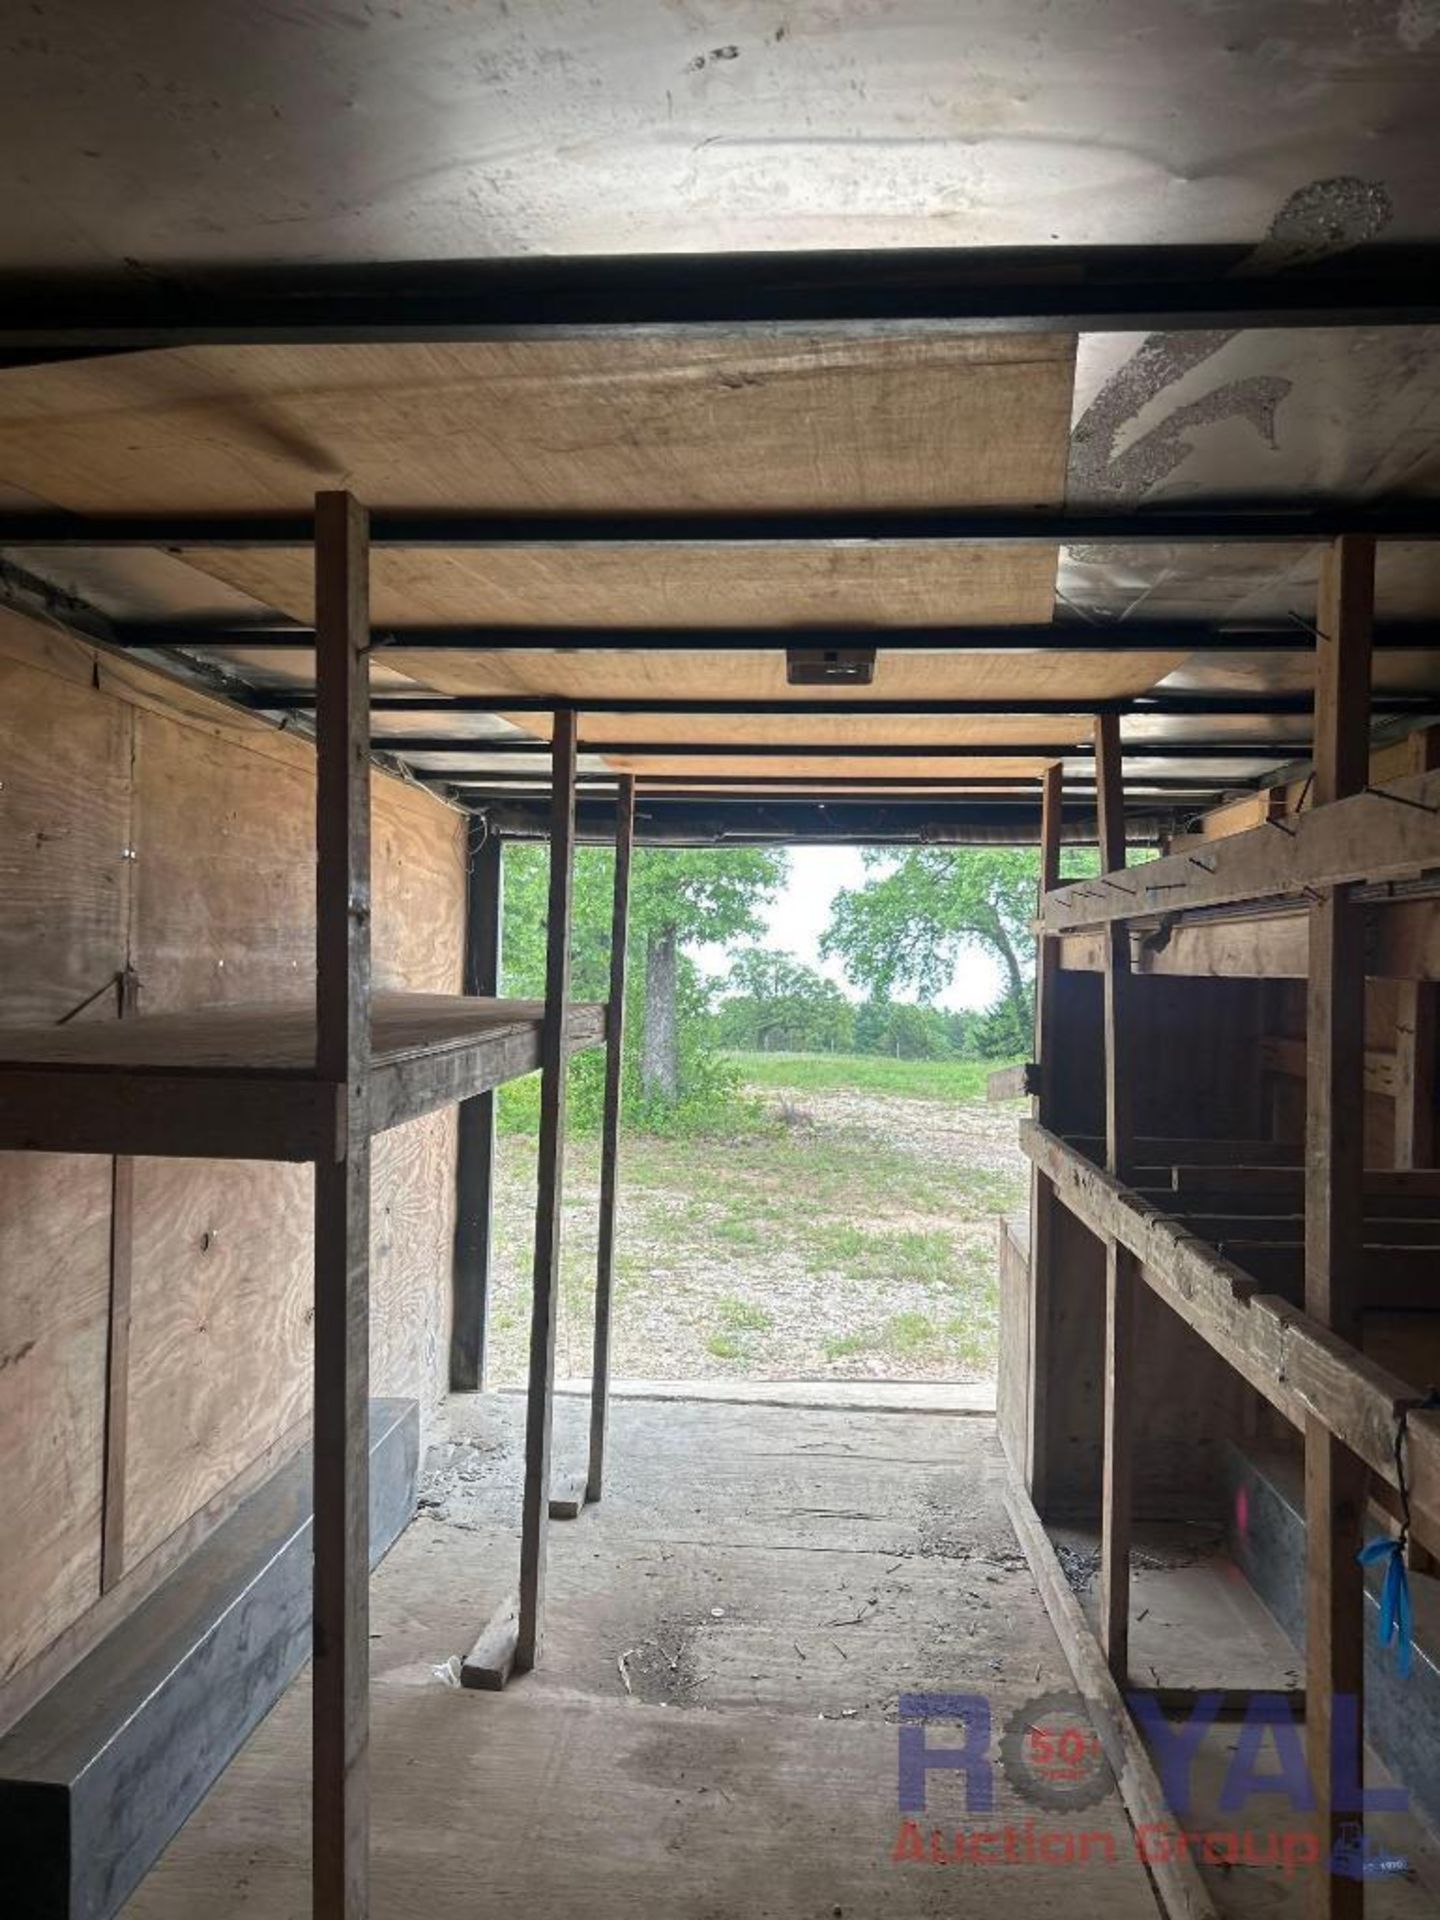 16ft. Texan cargo box trailer - Image 12 of 12